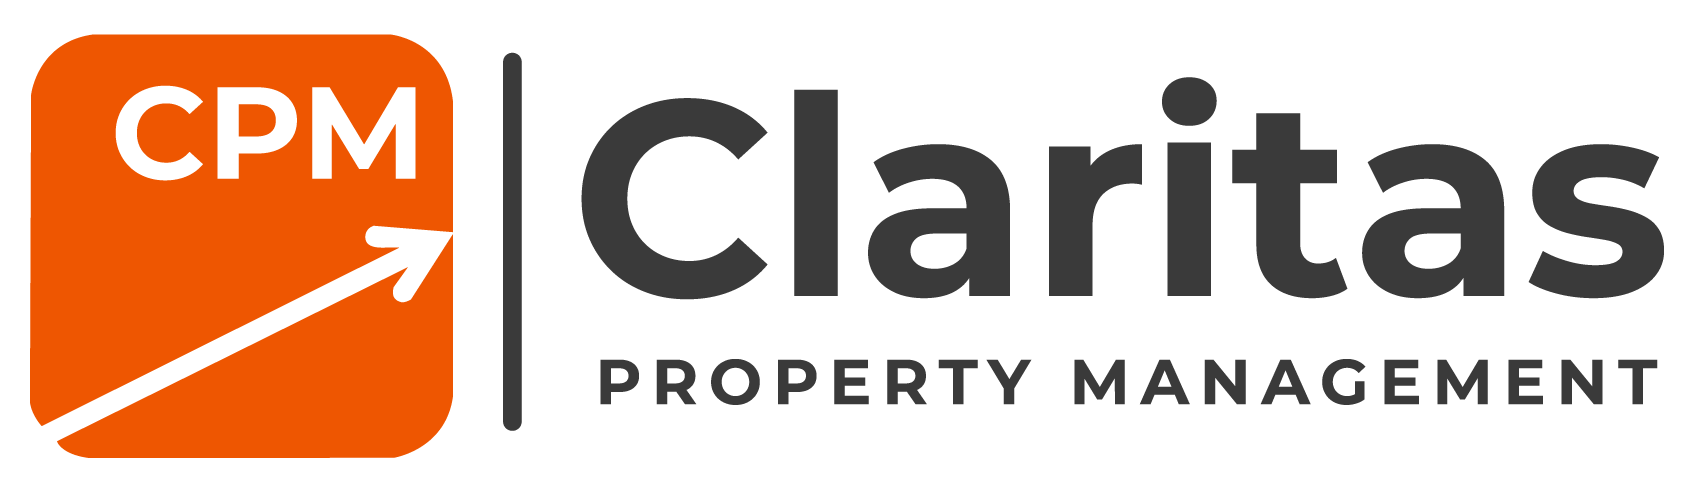 Claritas Property Management Header Logo - Select To Go Home